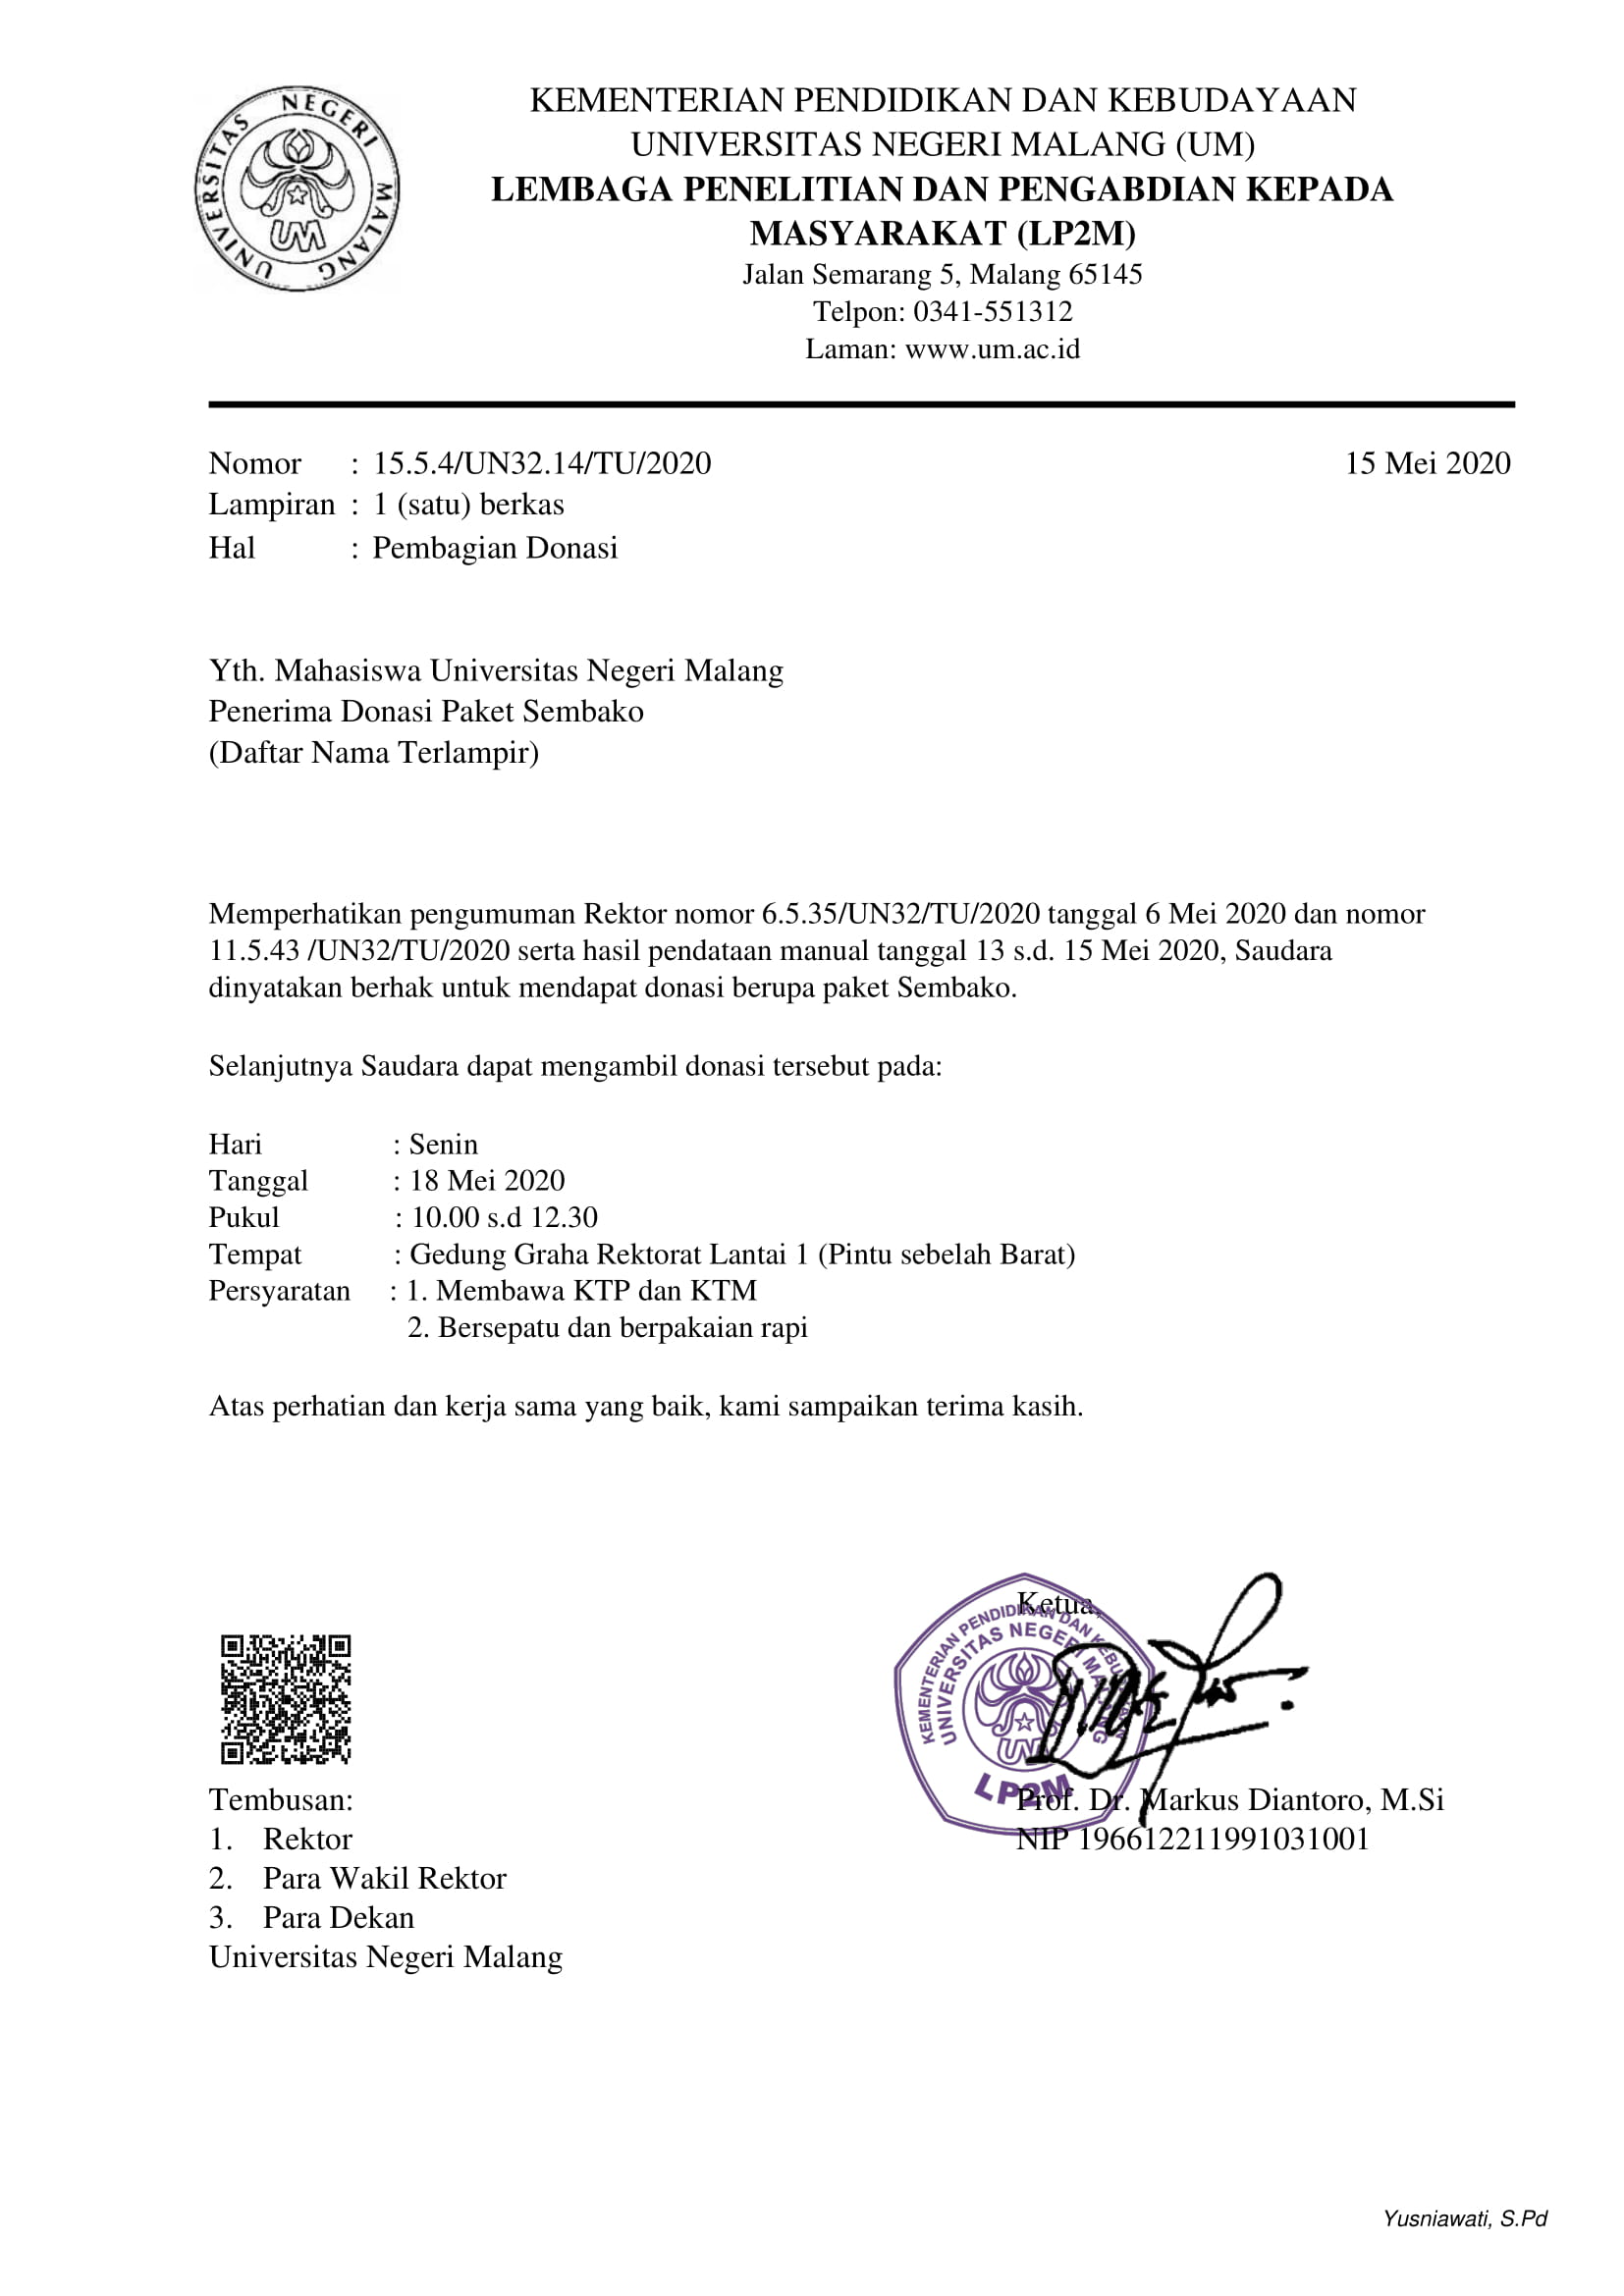 Jadwal Pembagian Donasi Paket Sembako Universitas Negeri Malang